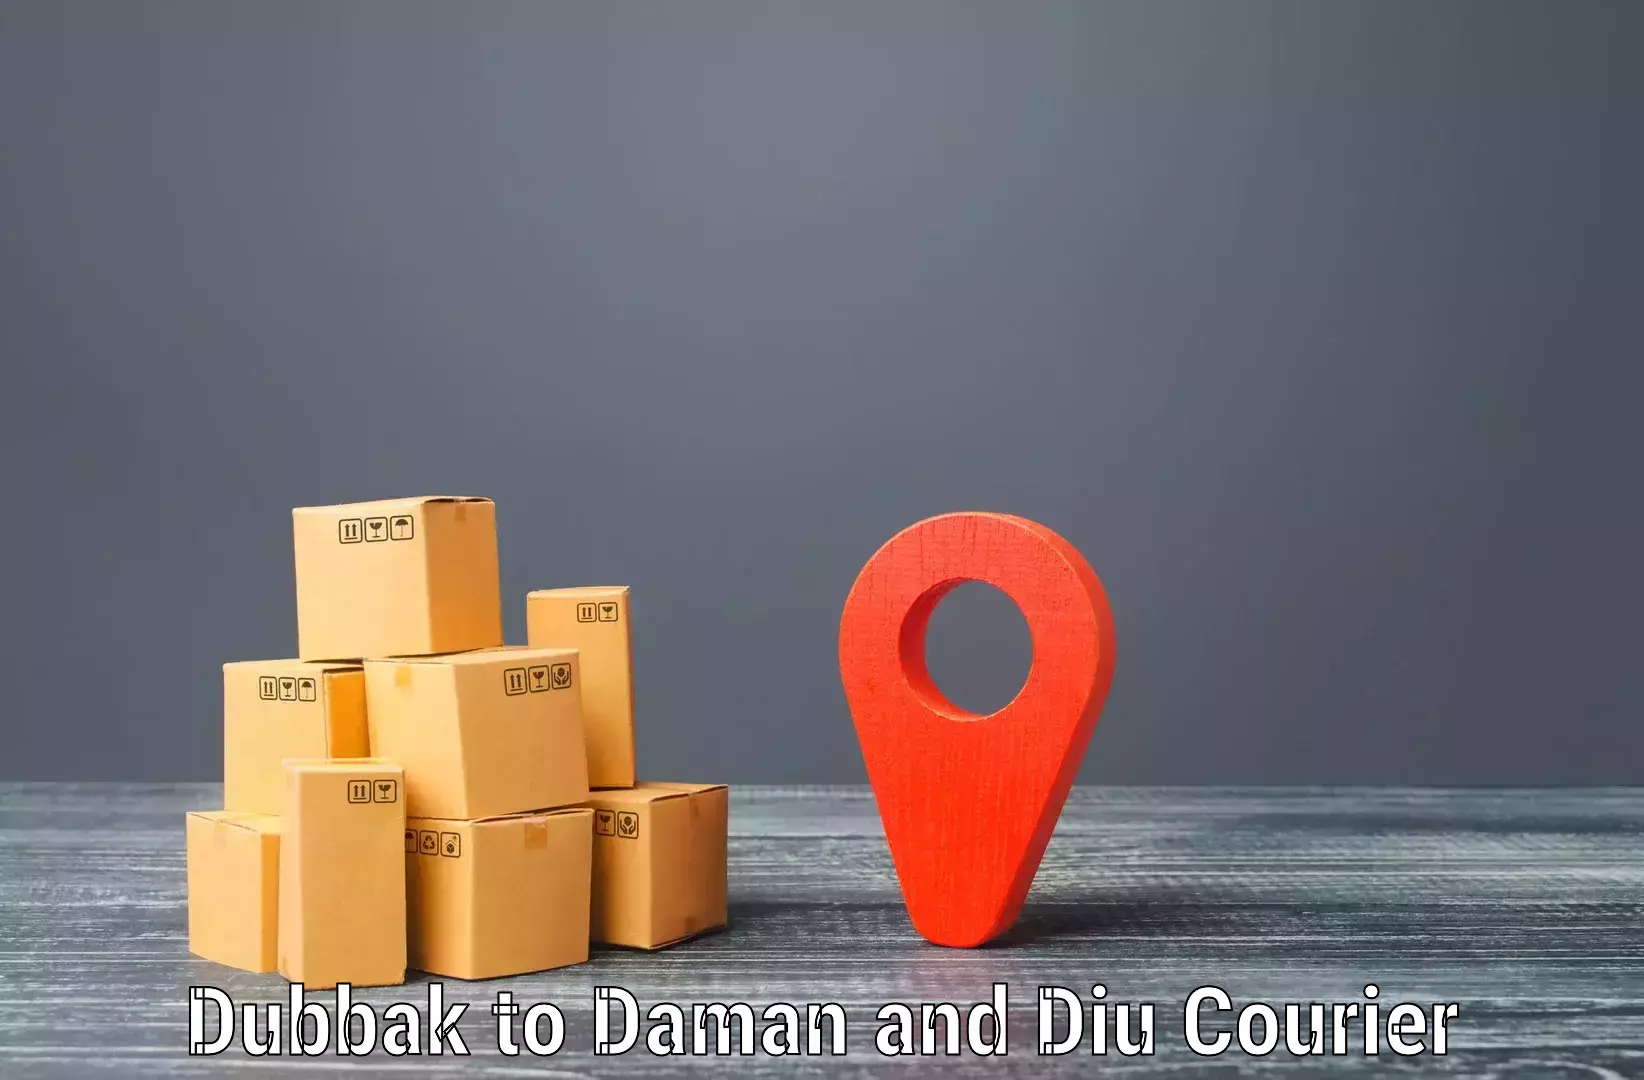 Customer-centric shipping Dubbak to Diu